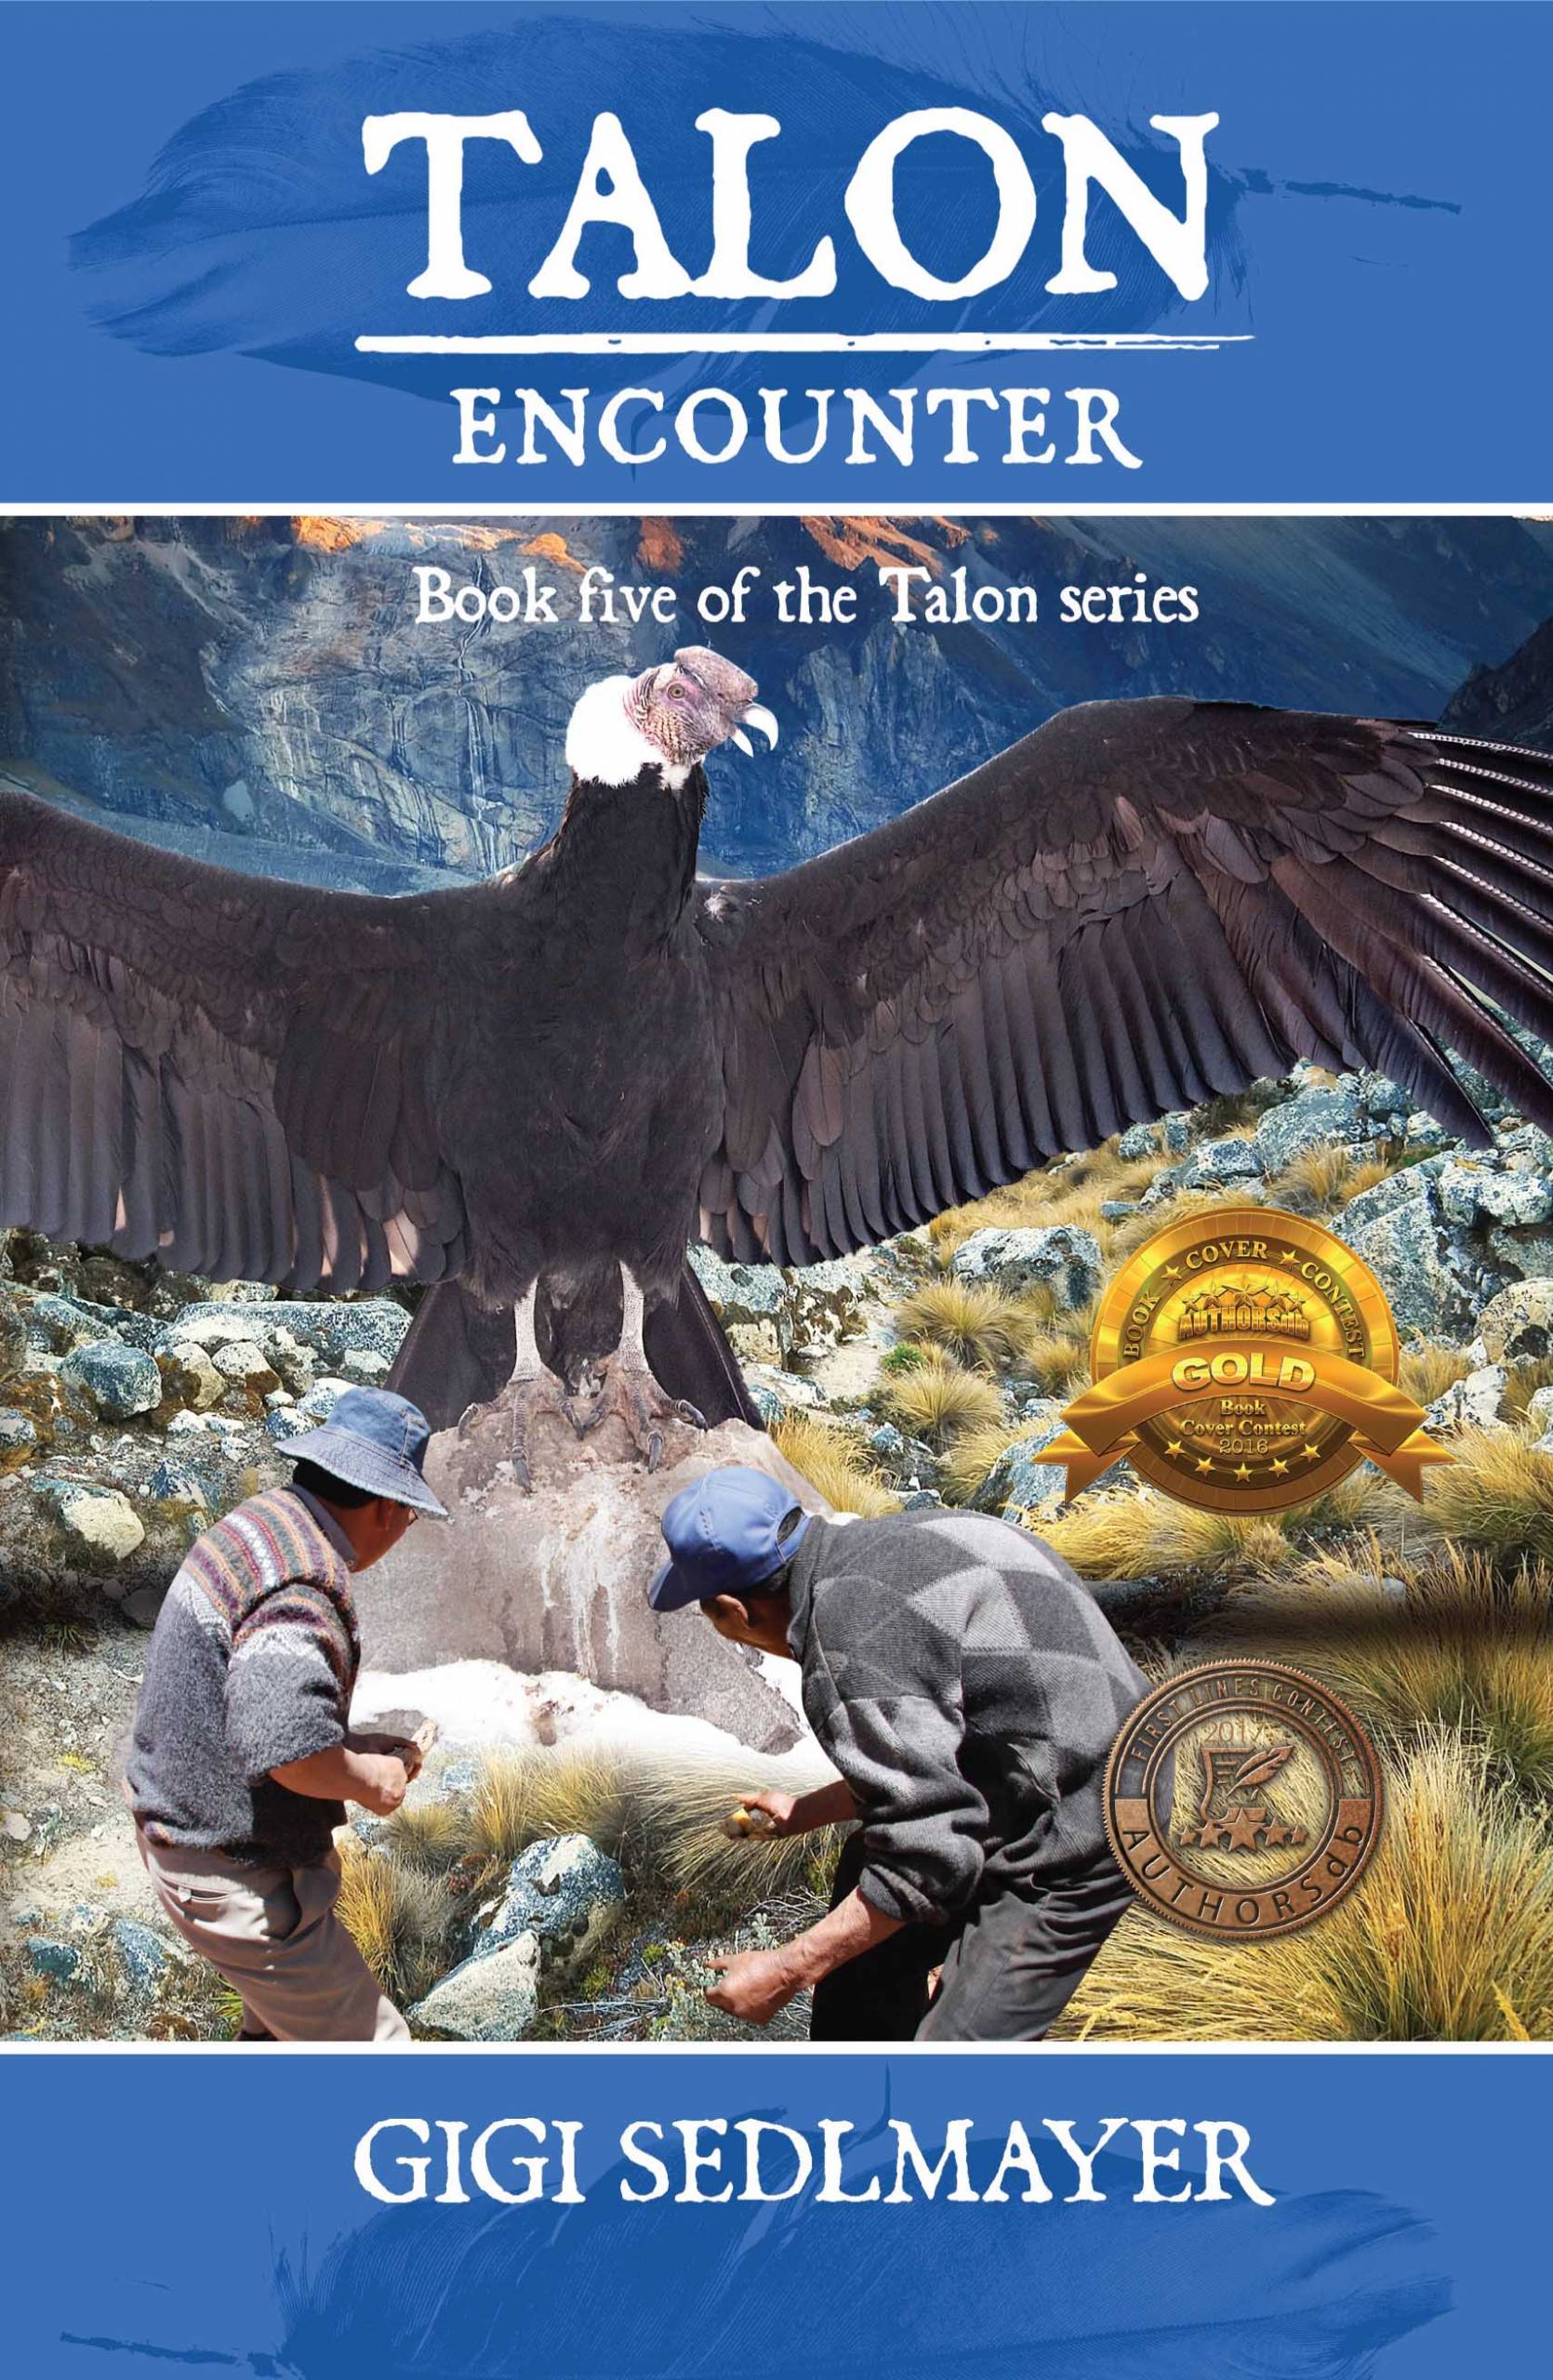 Talon, Encounter - Australia, Condor, Gigi Sedlmayer, Peru, Poachers,